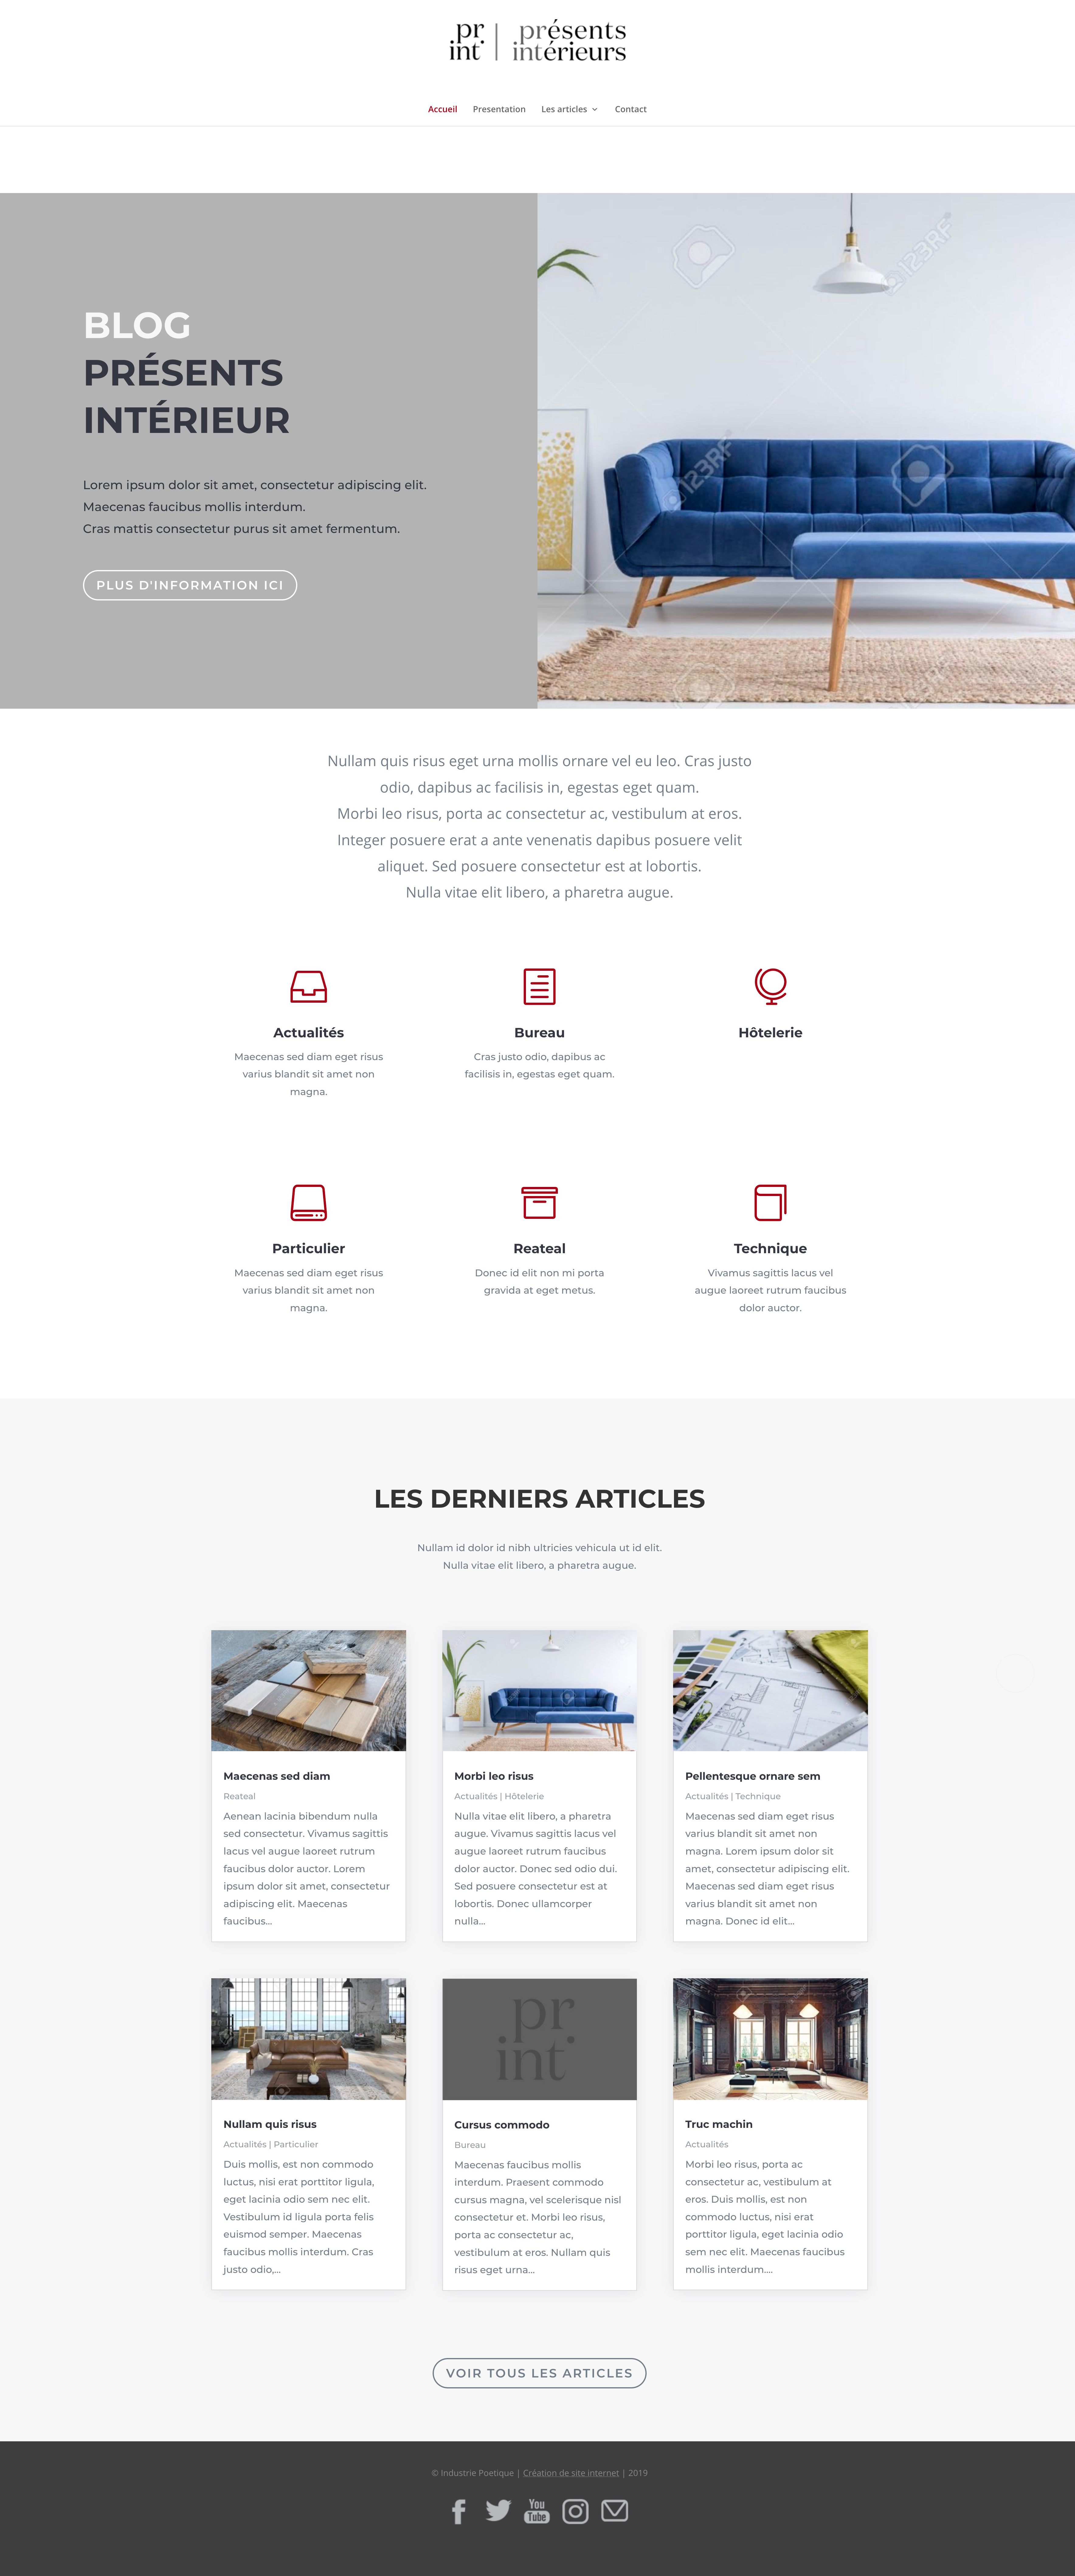 Exemples de Page d’Accueil pour Site Internet 50- Exemple de page d'accueil pour un blog d'actualités sur le design